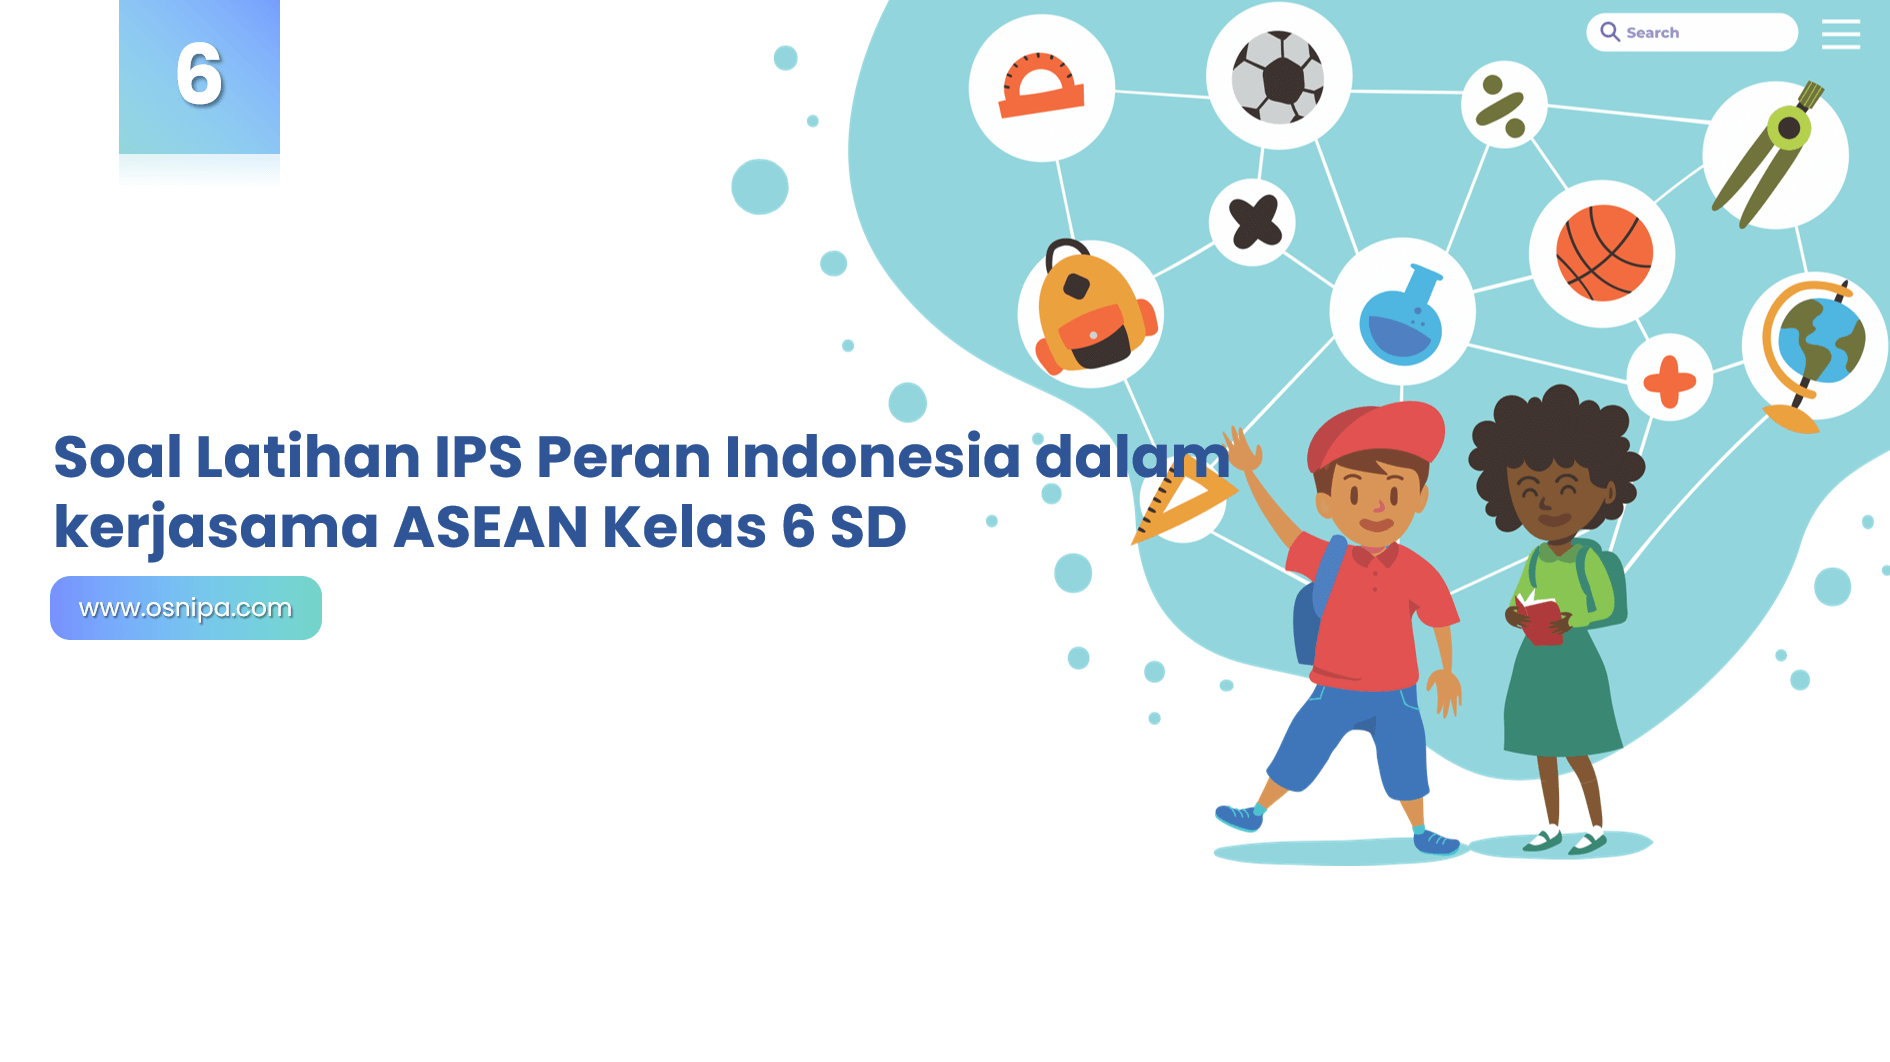 Soal Latihan IPS Peran Indonesia dalam kerjasama ASEAN Kelas 6 SD